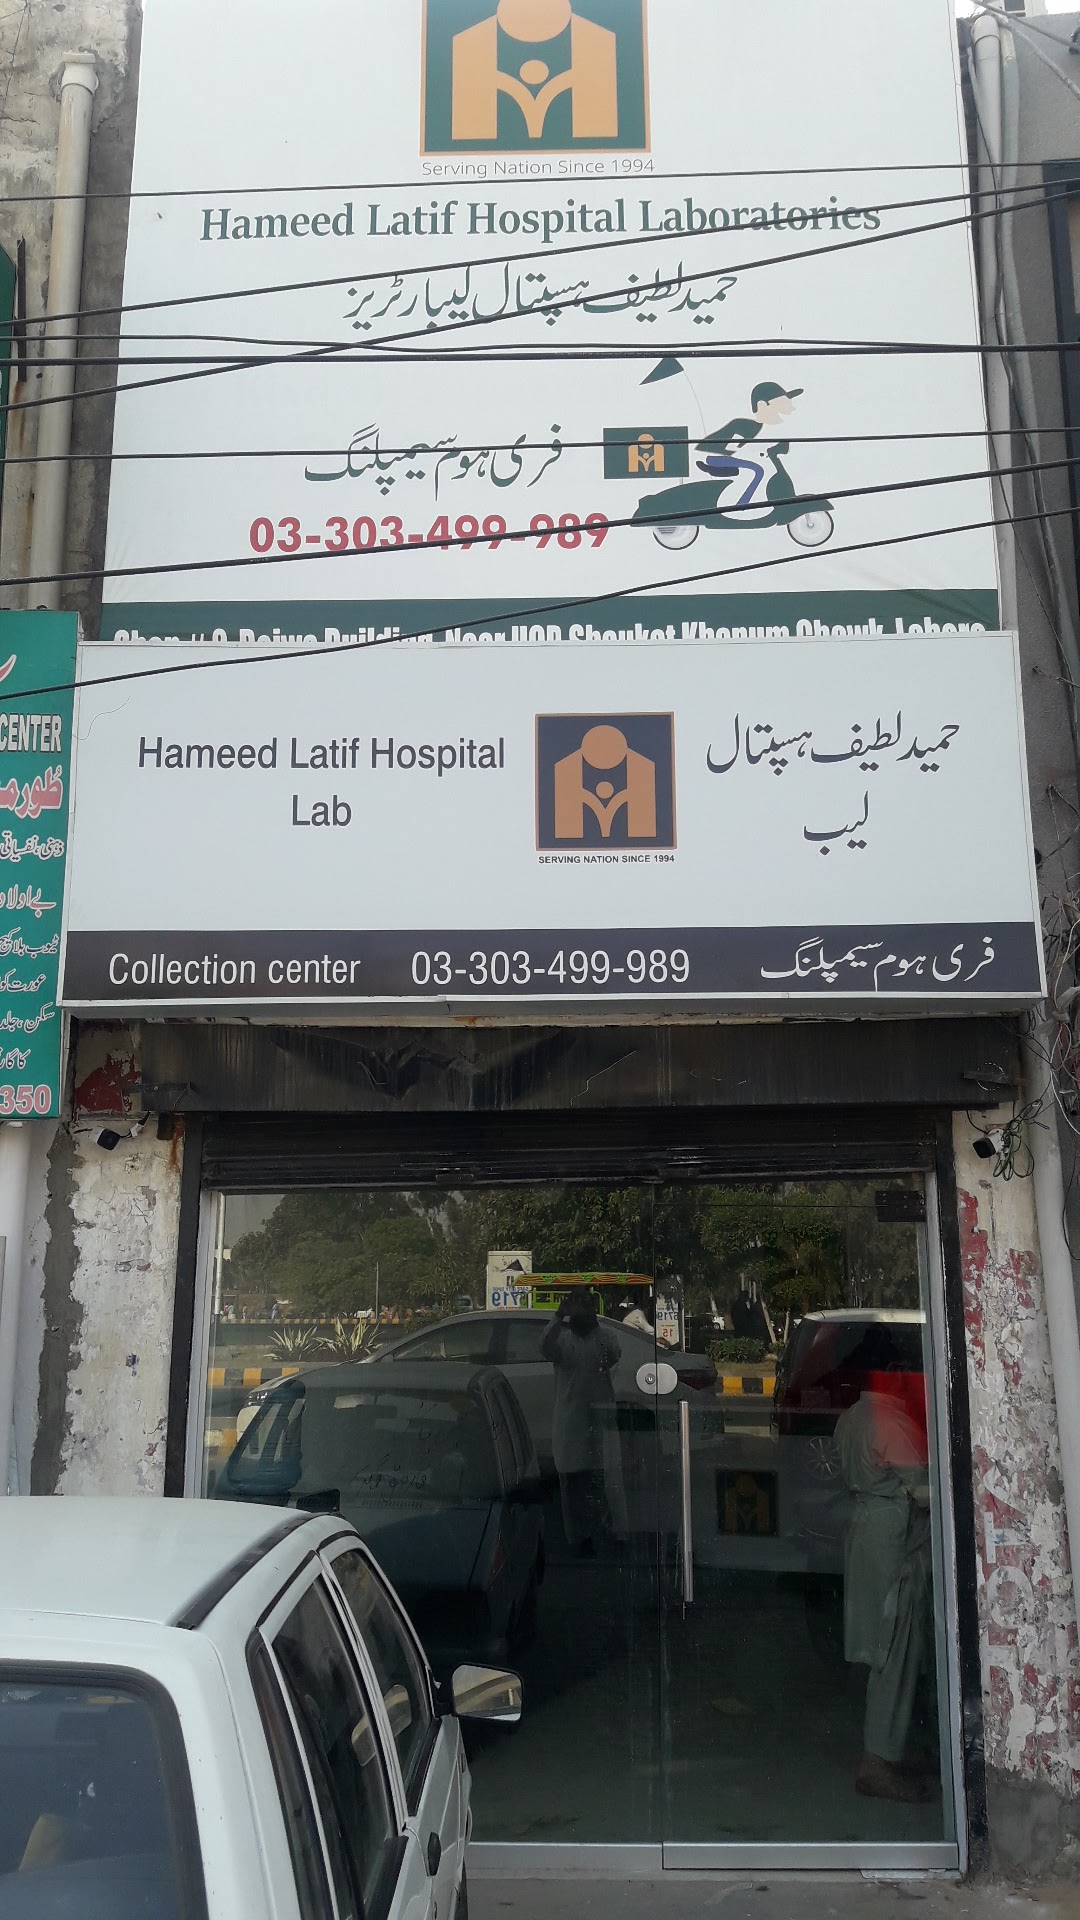 Hameed Latif Hospital Laboratories